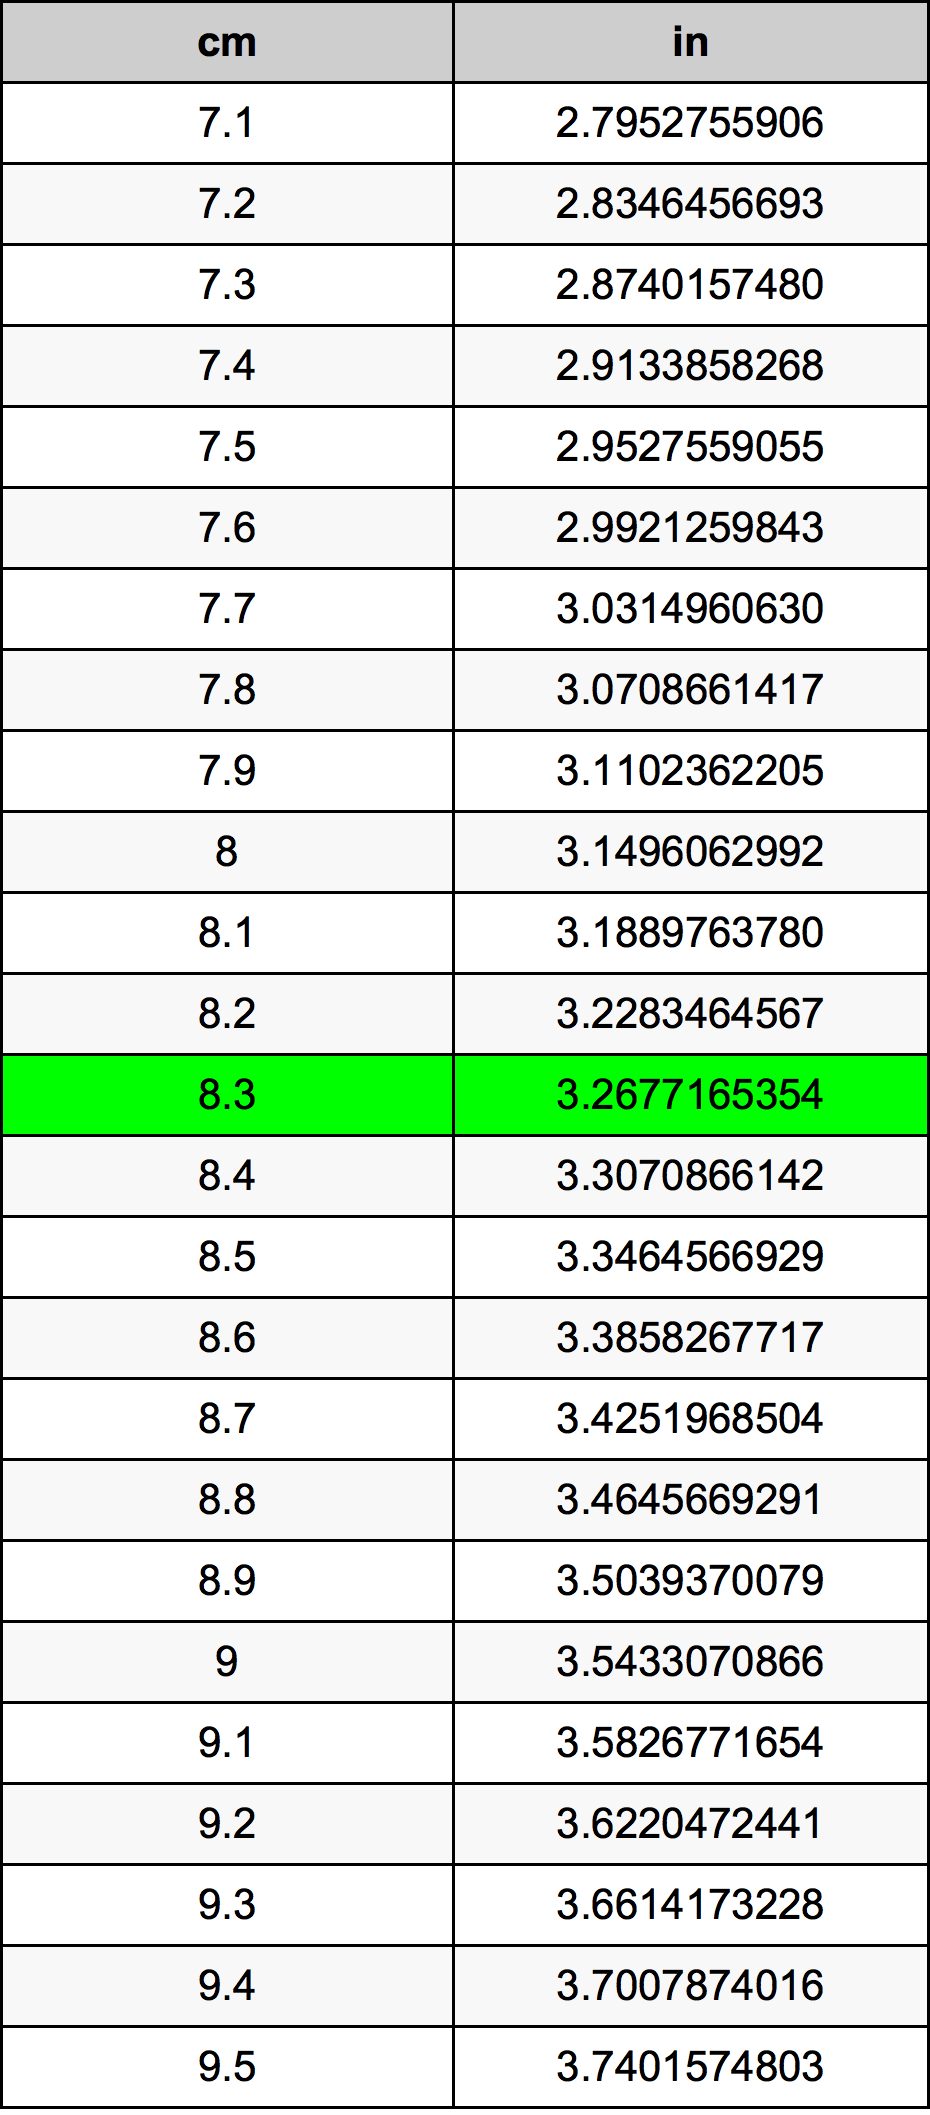 8.3 Centiméter átszámítási táblázat